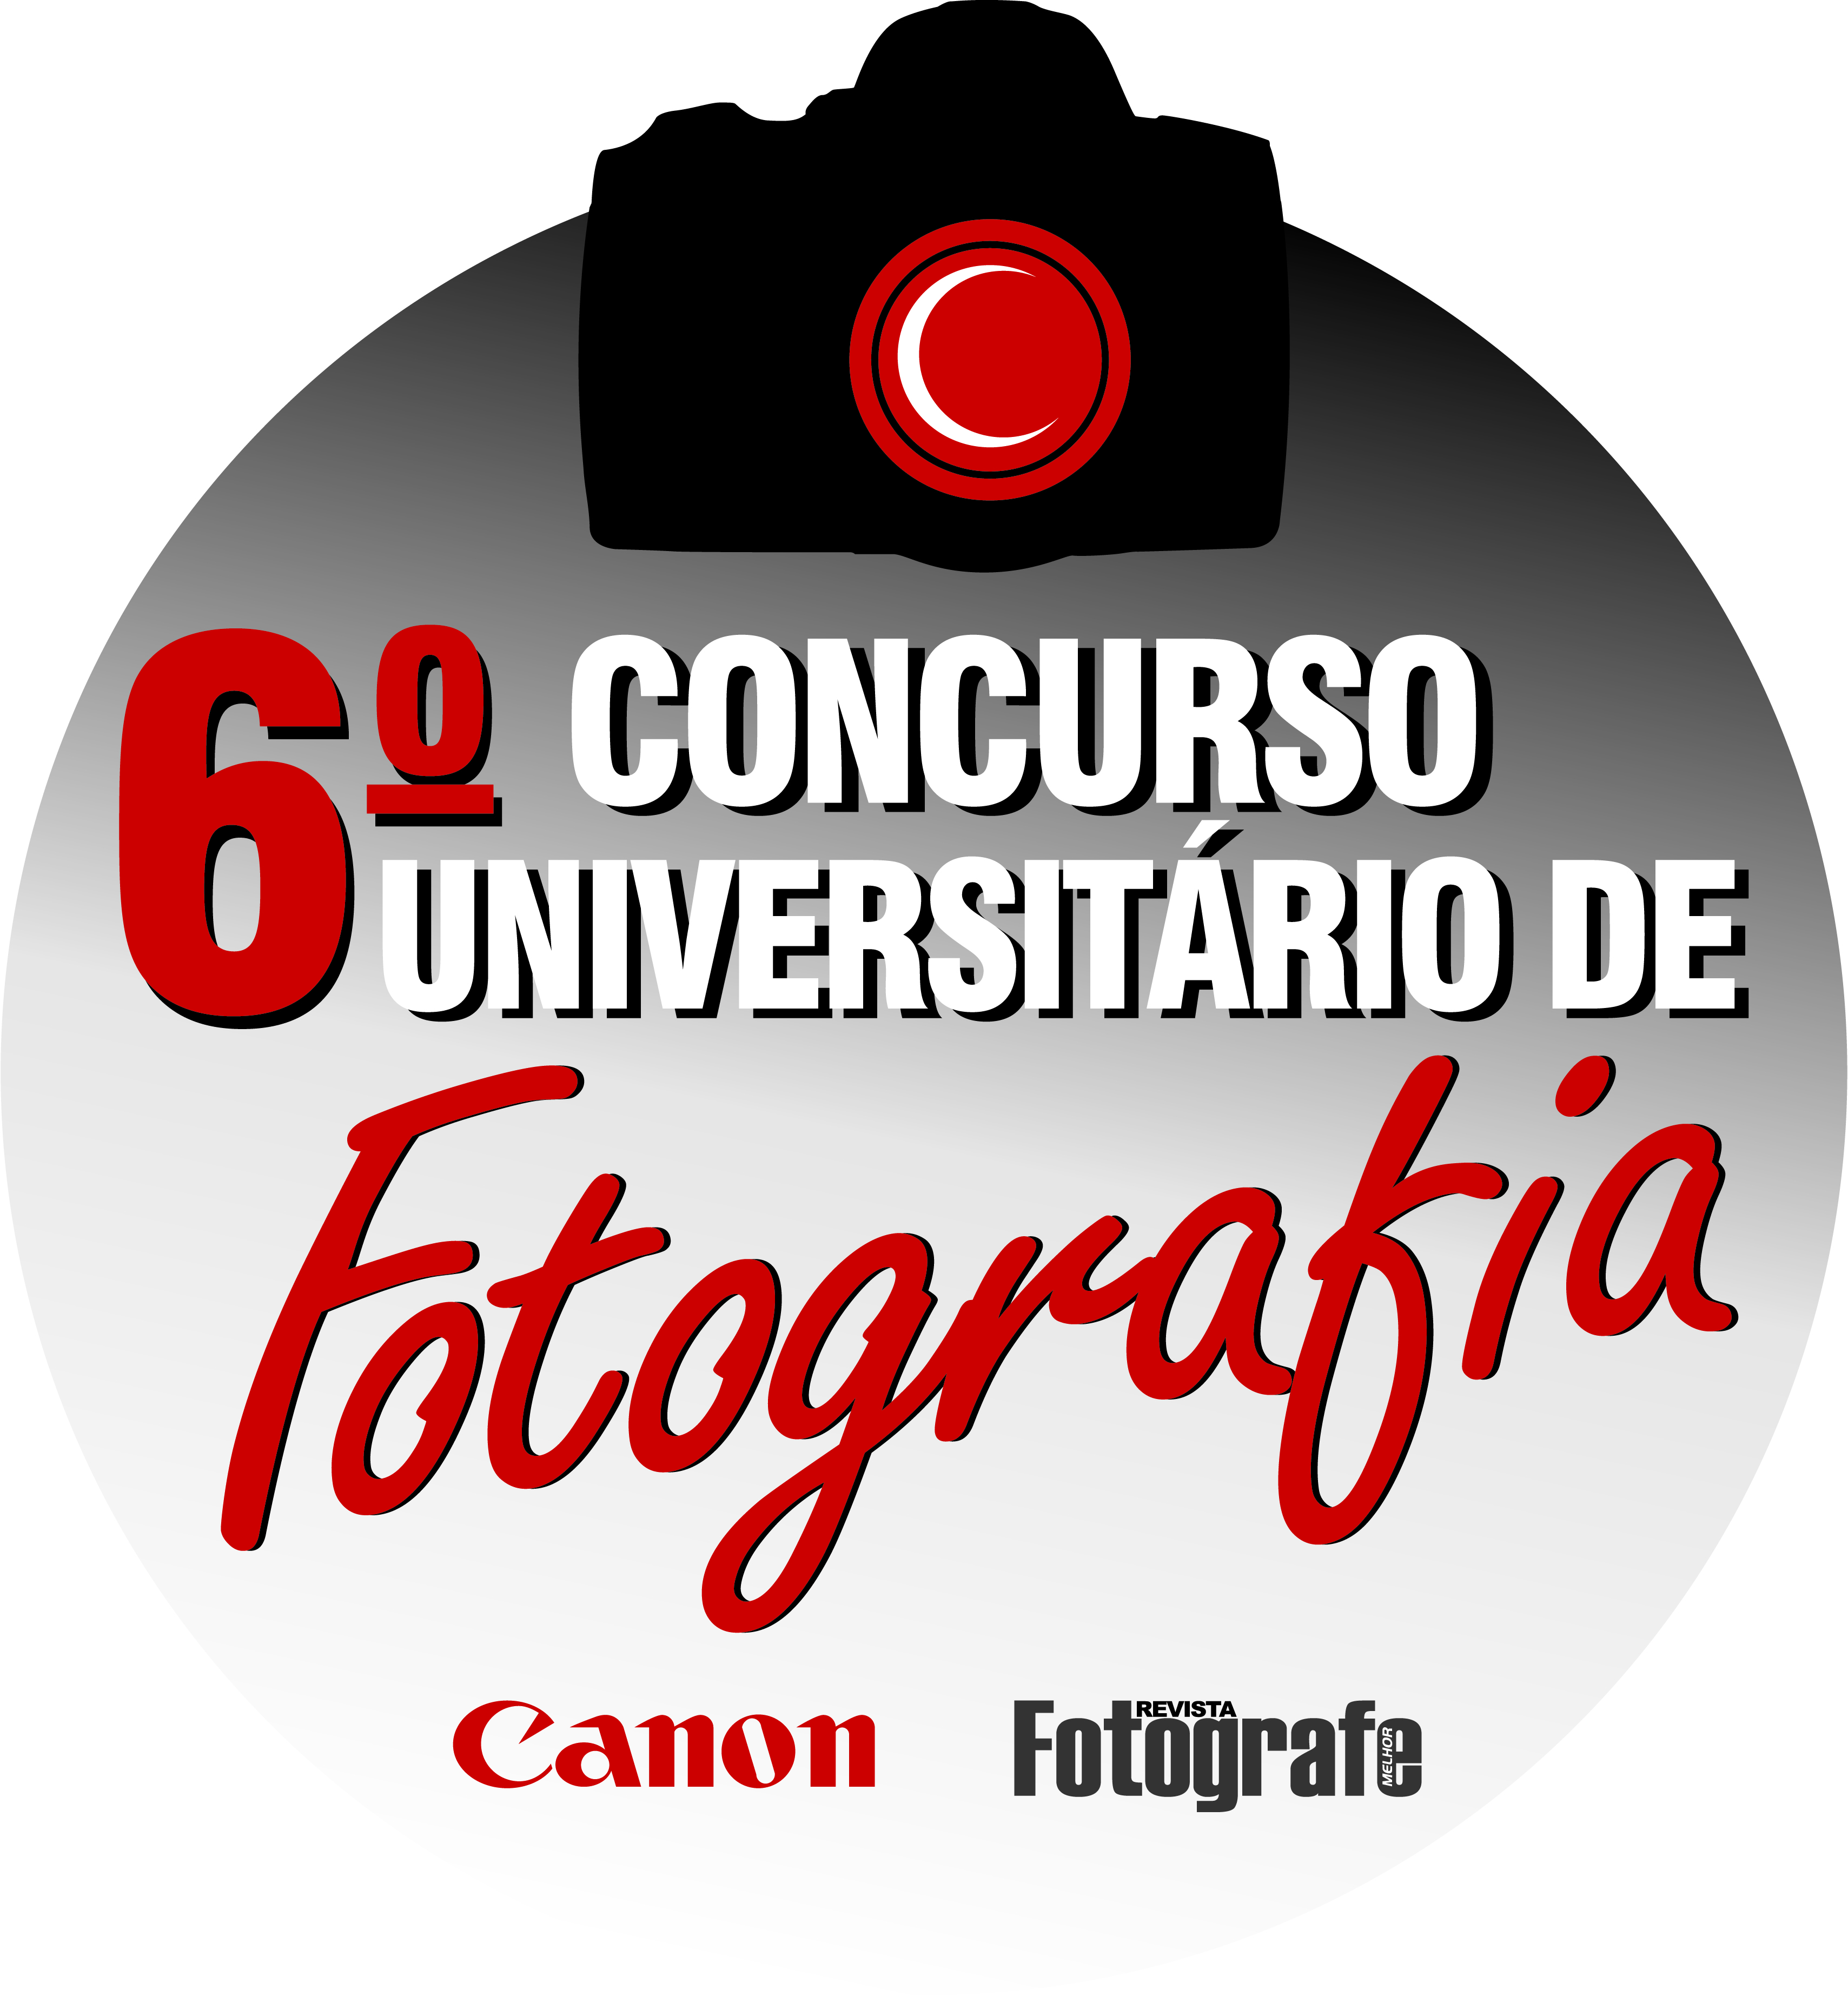 Canon e revista Fotografe promovem 6º concurso universitário de Fotografia